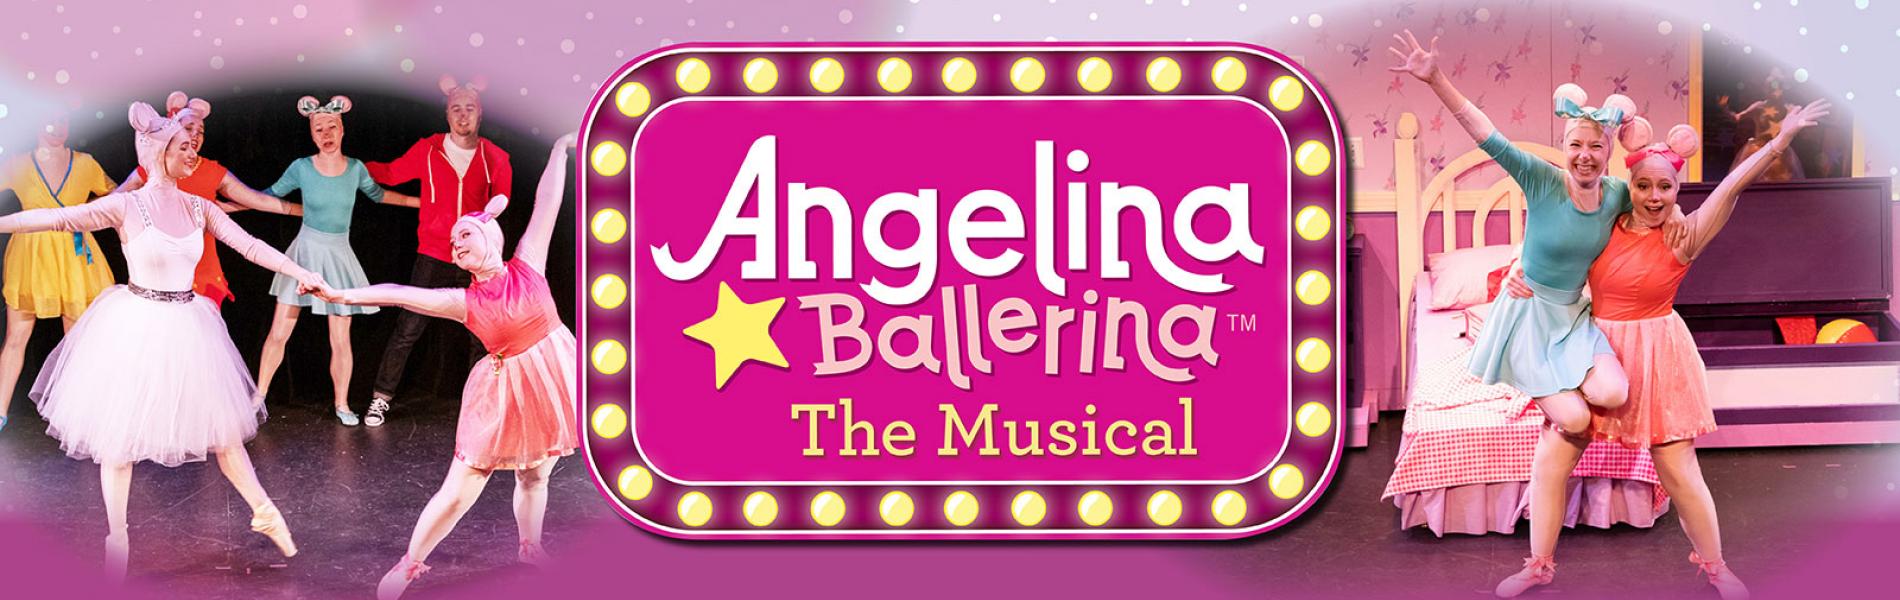 vejledning et eller andet sted krokodille Angelina Ballerina The Musical | Wake Forest Renaissance Centre